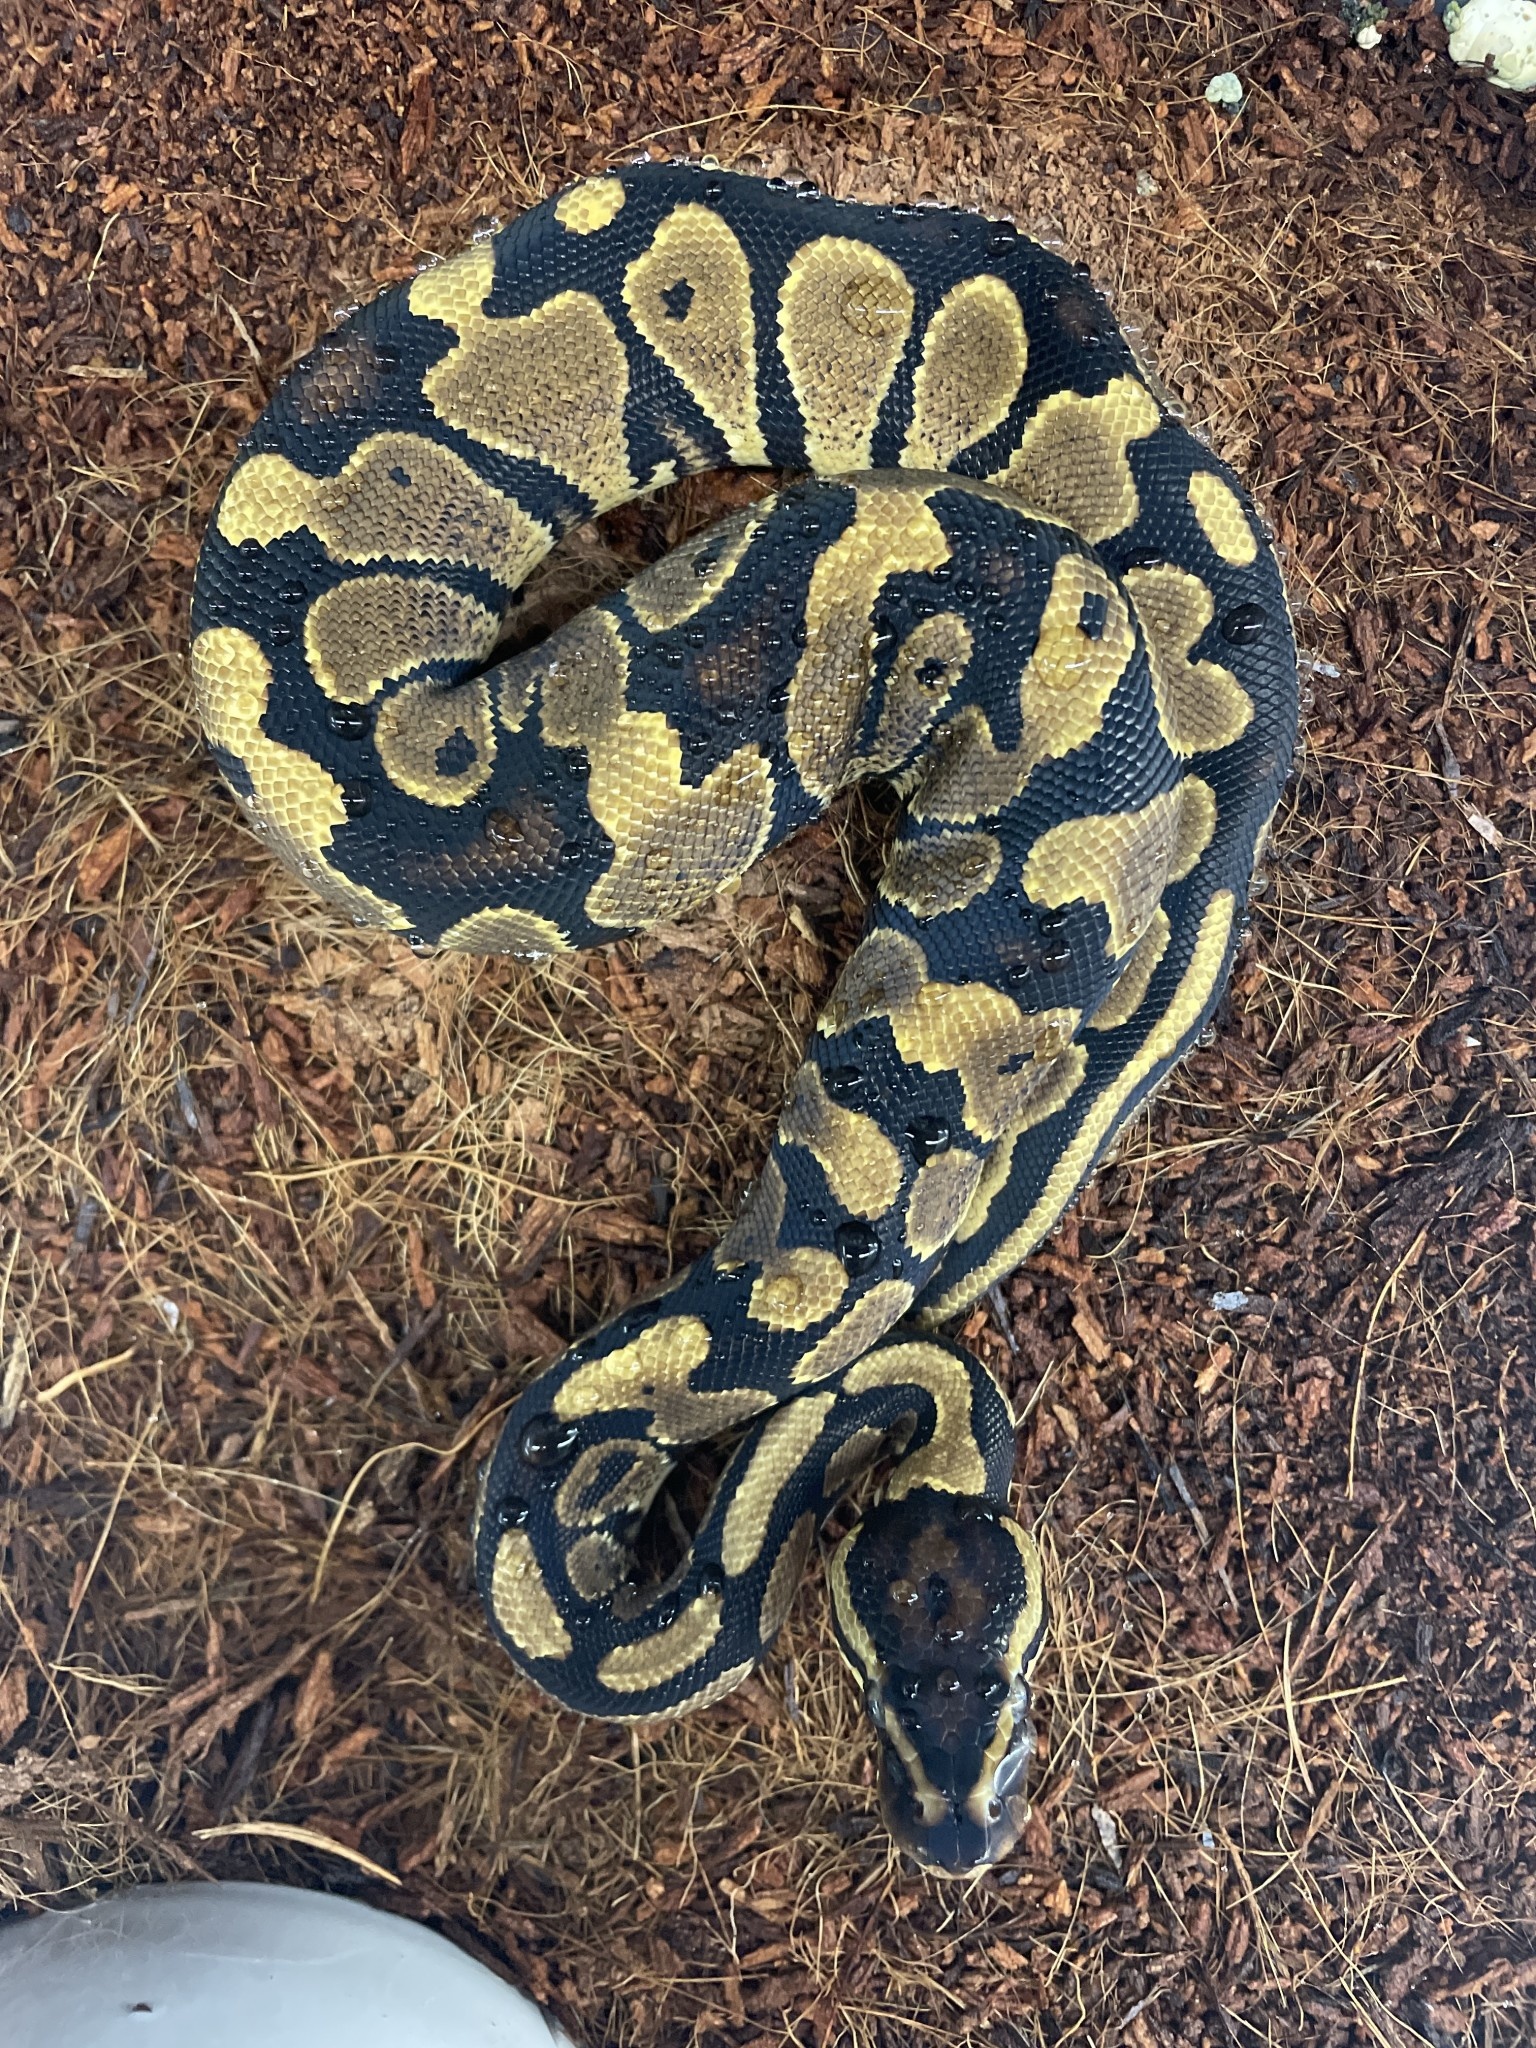 Asphalt/Yellowbelly Ball Python